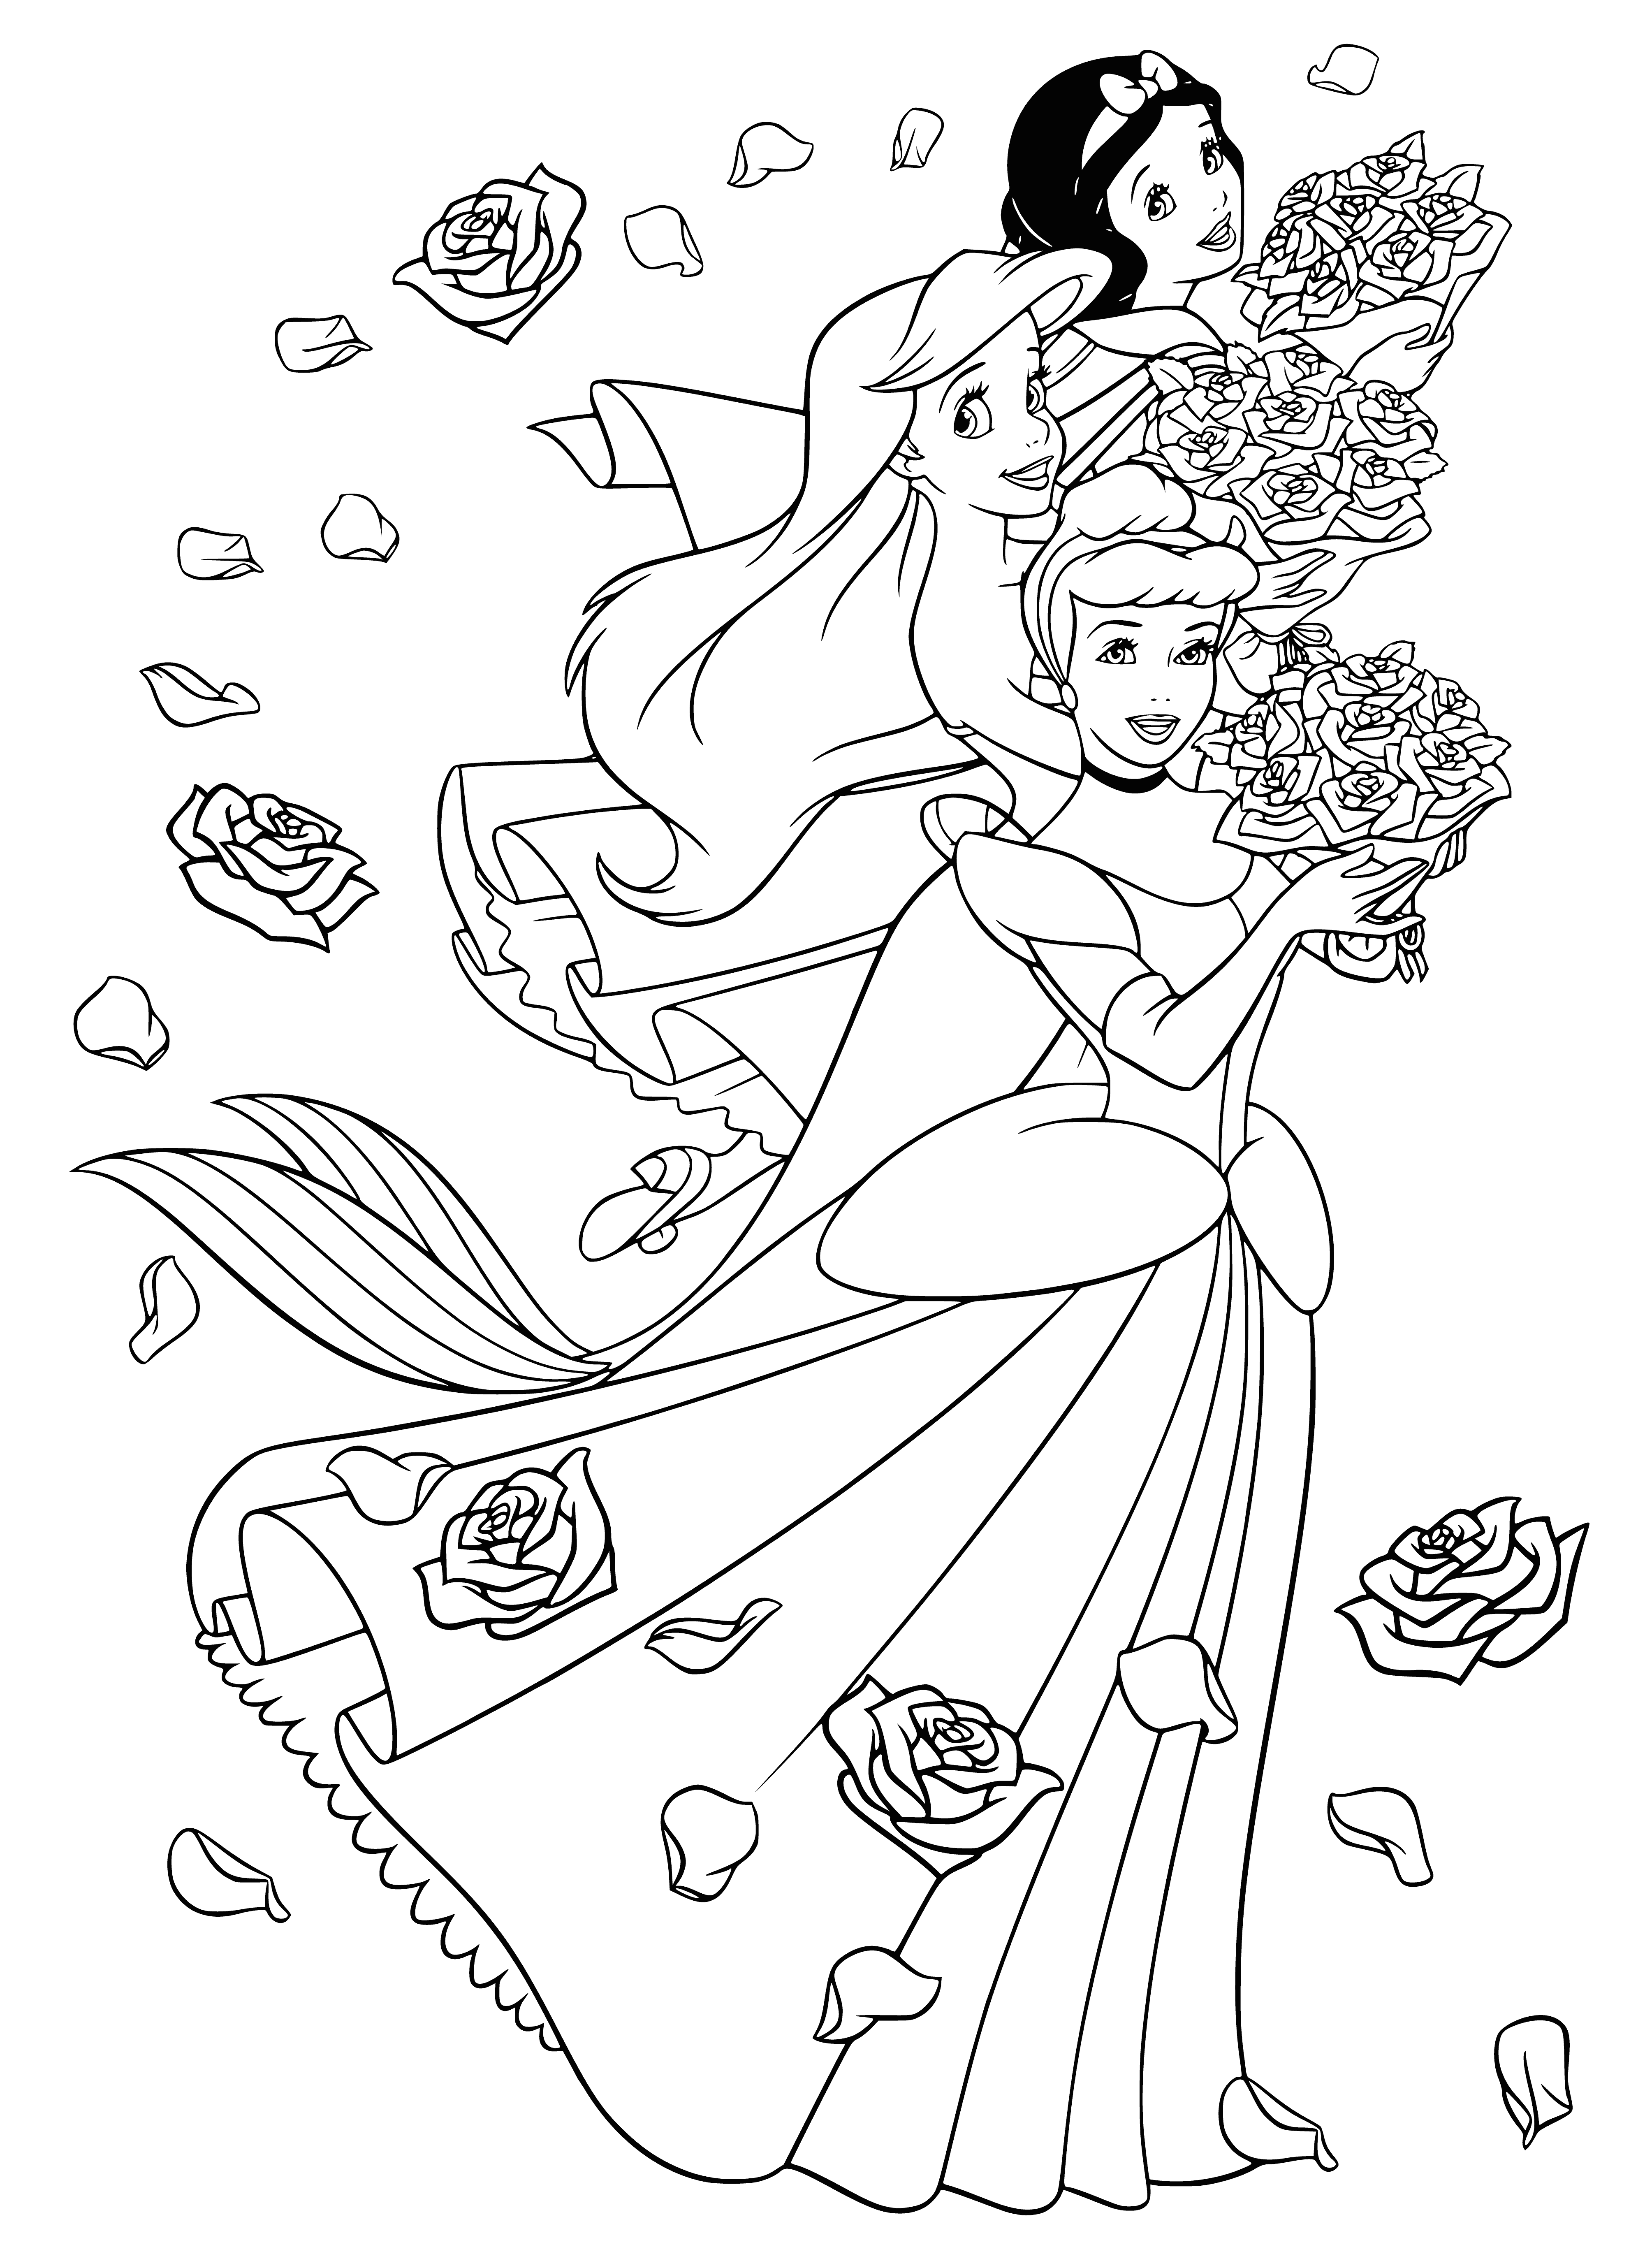 Cinderella, Ariel, Snow White coloring page